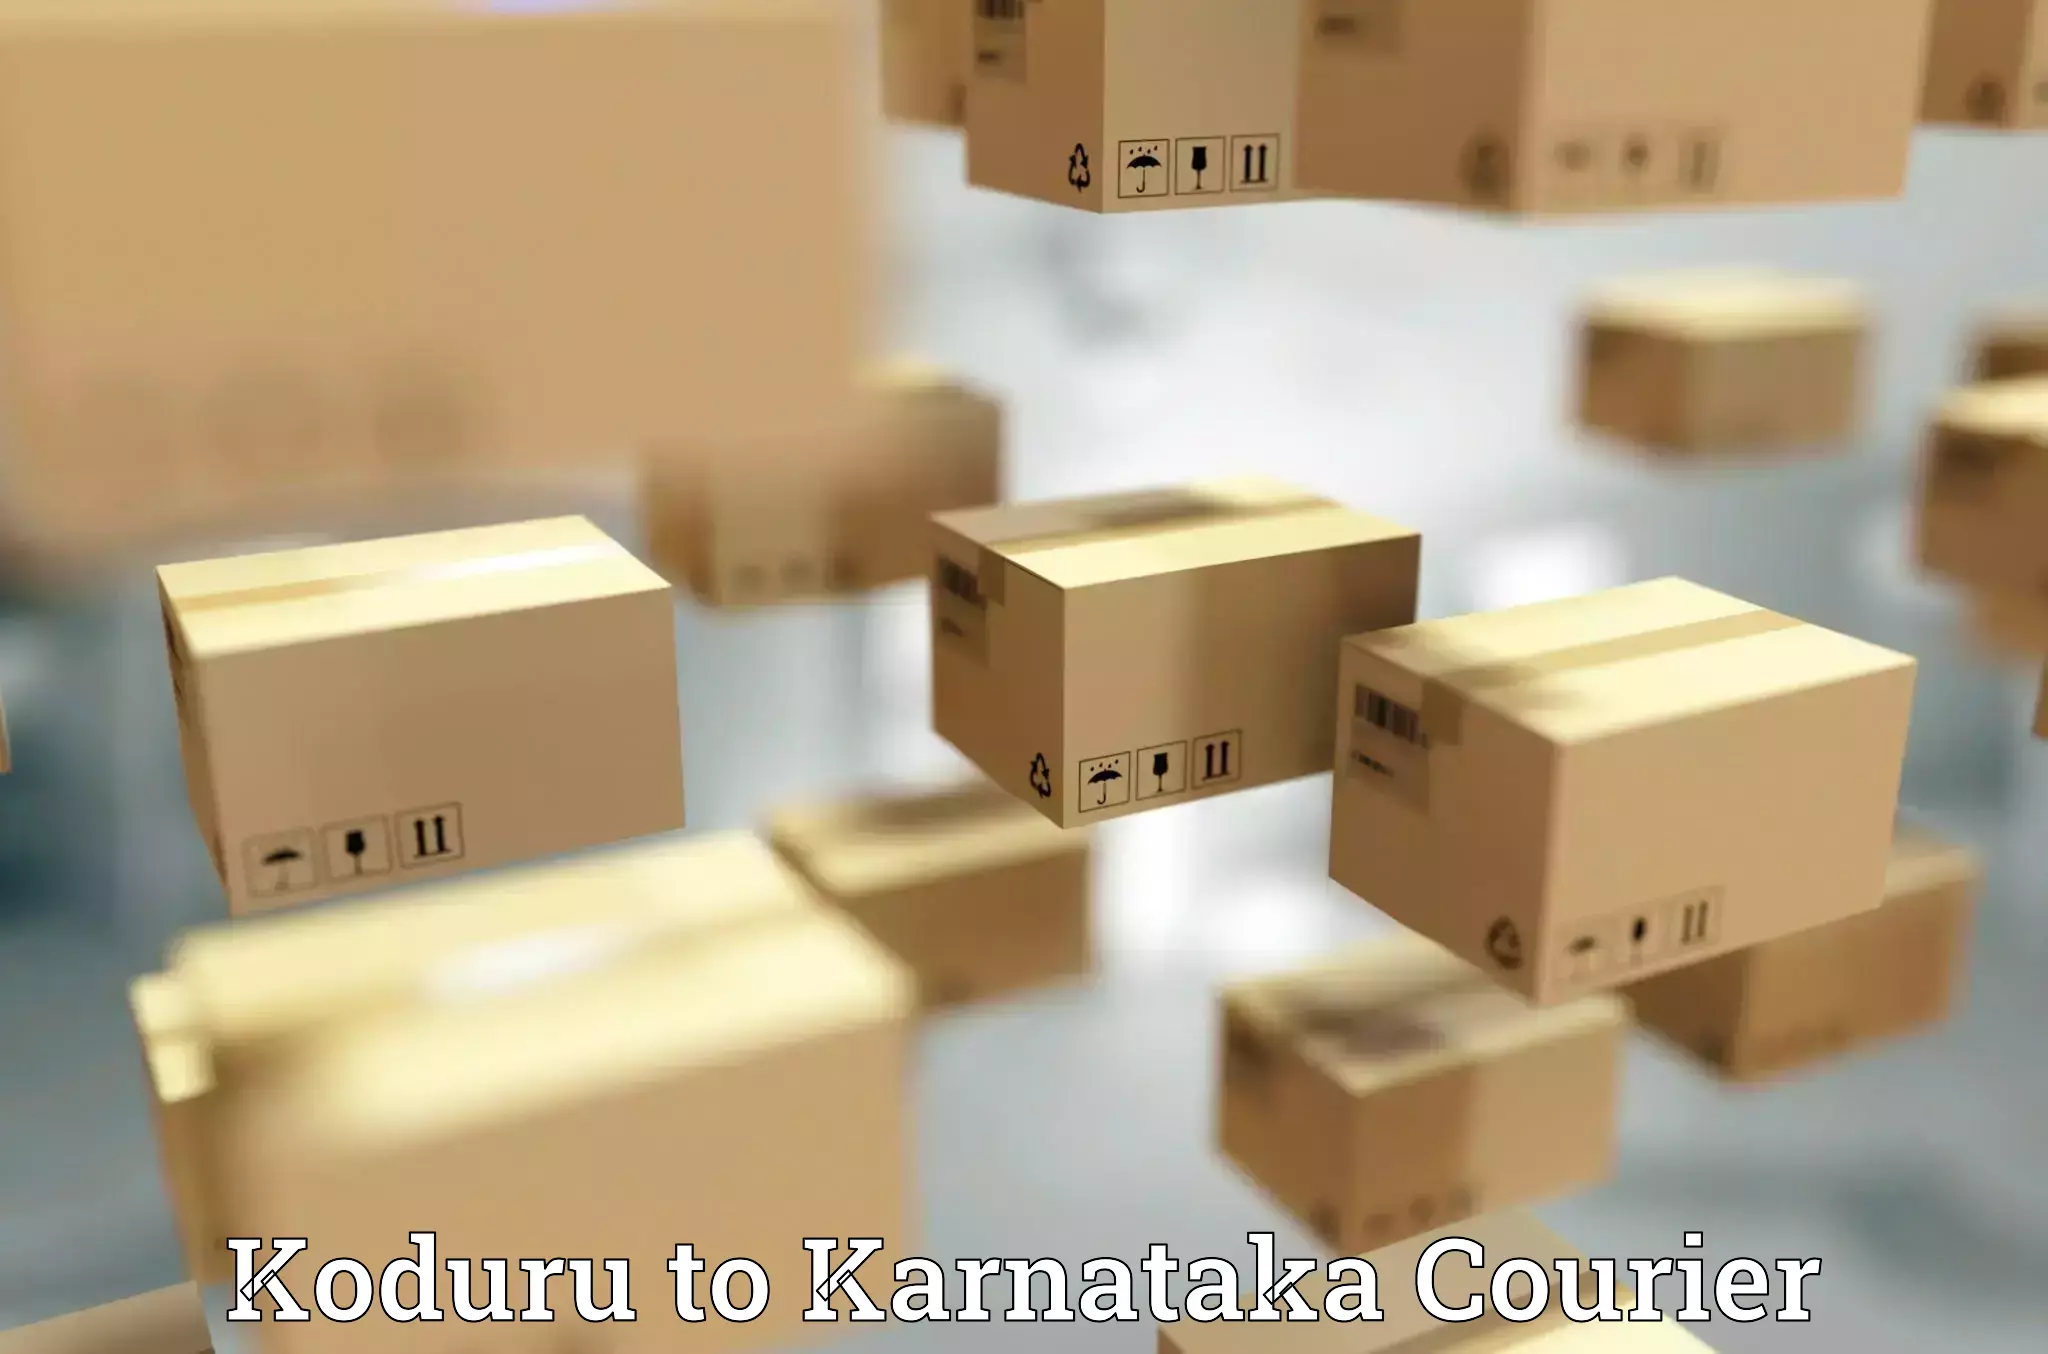 Secure package delivery Koduru to Saraswathipuram